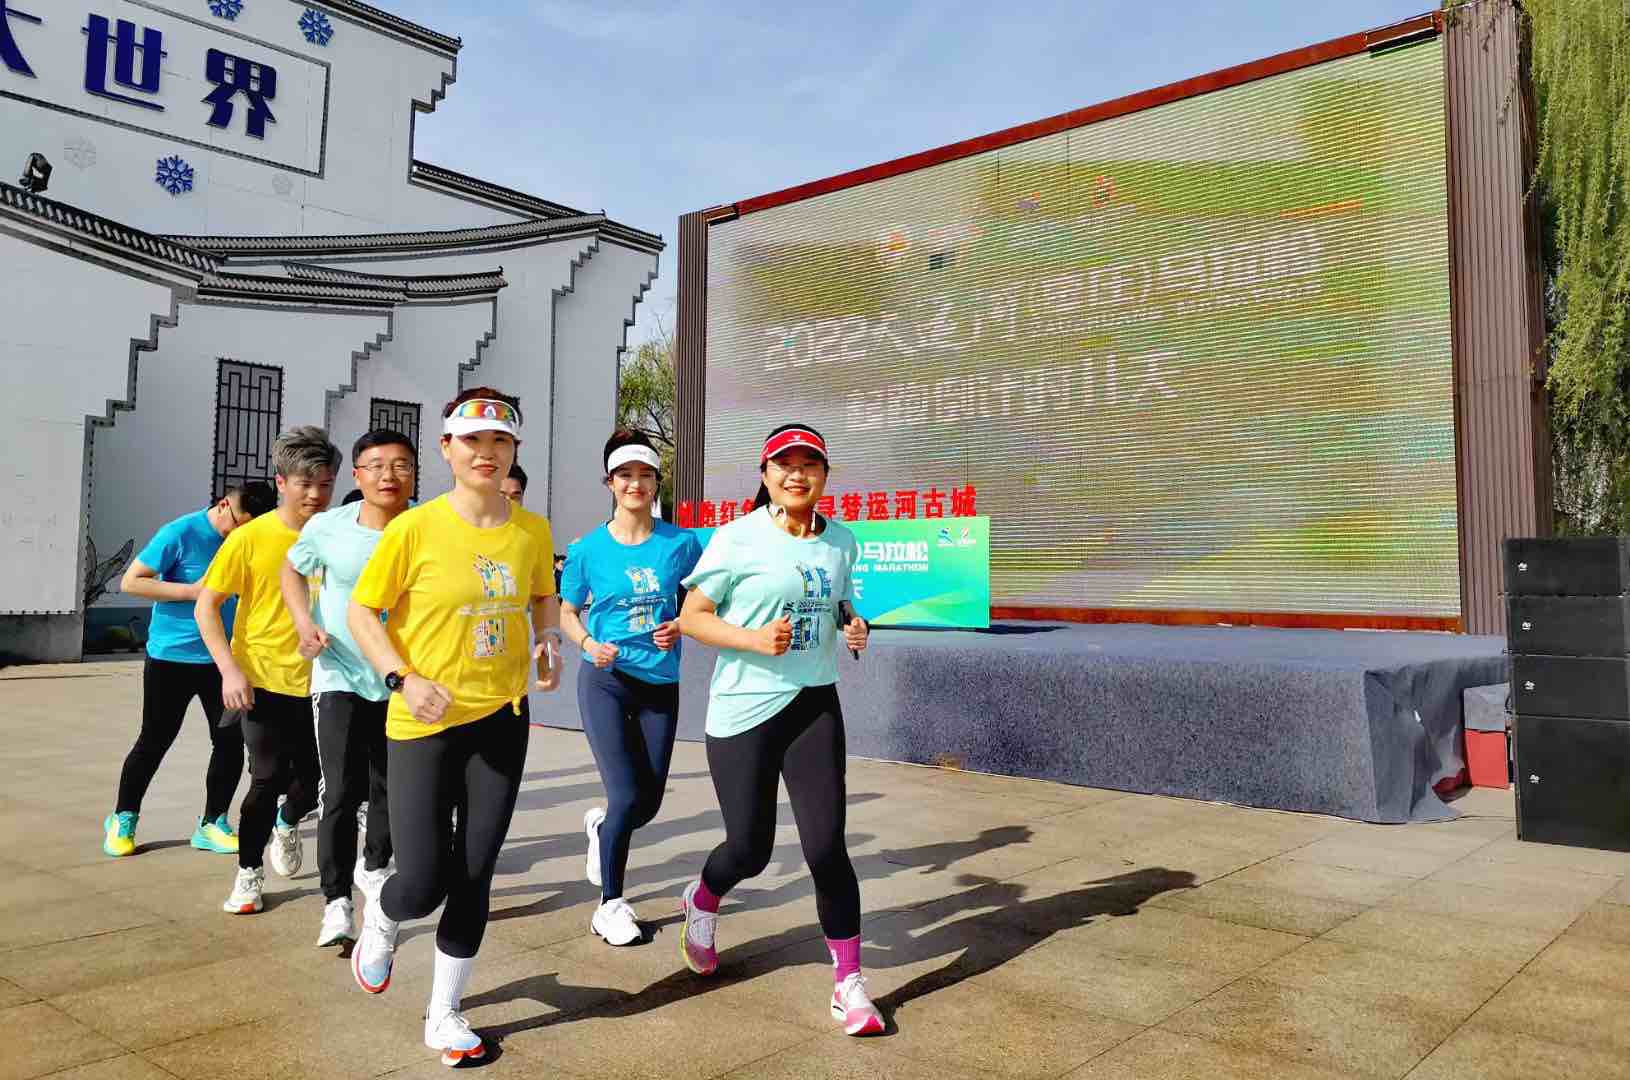 2022大运河（枣庄）马拉松赛将于4月9日鸣枪开跑